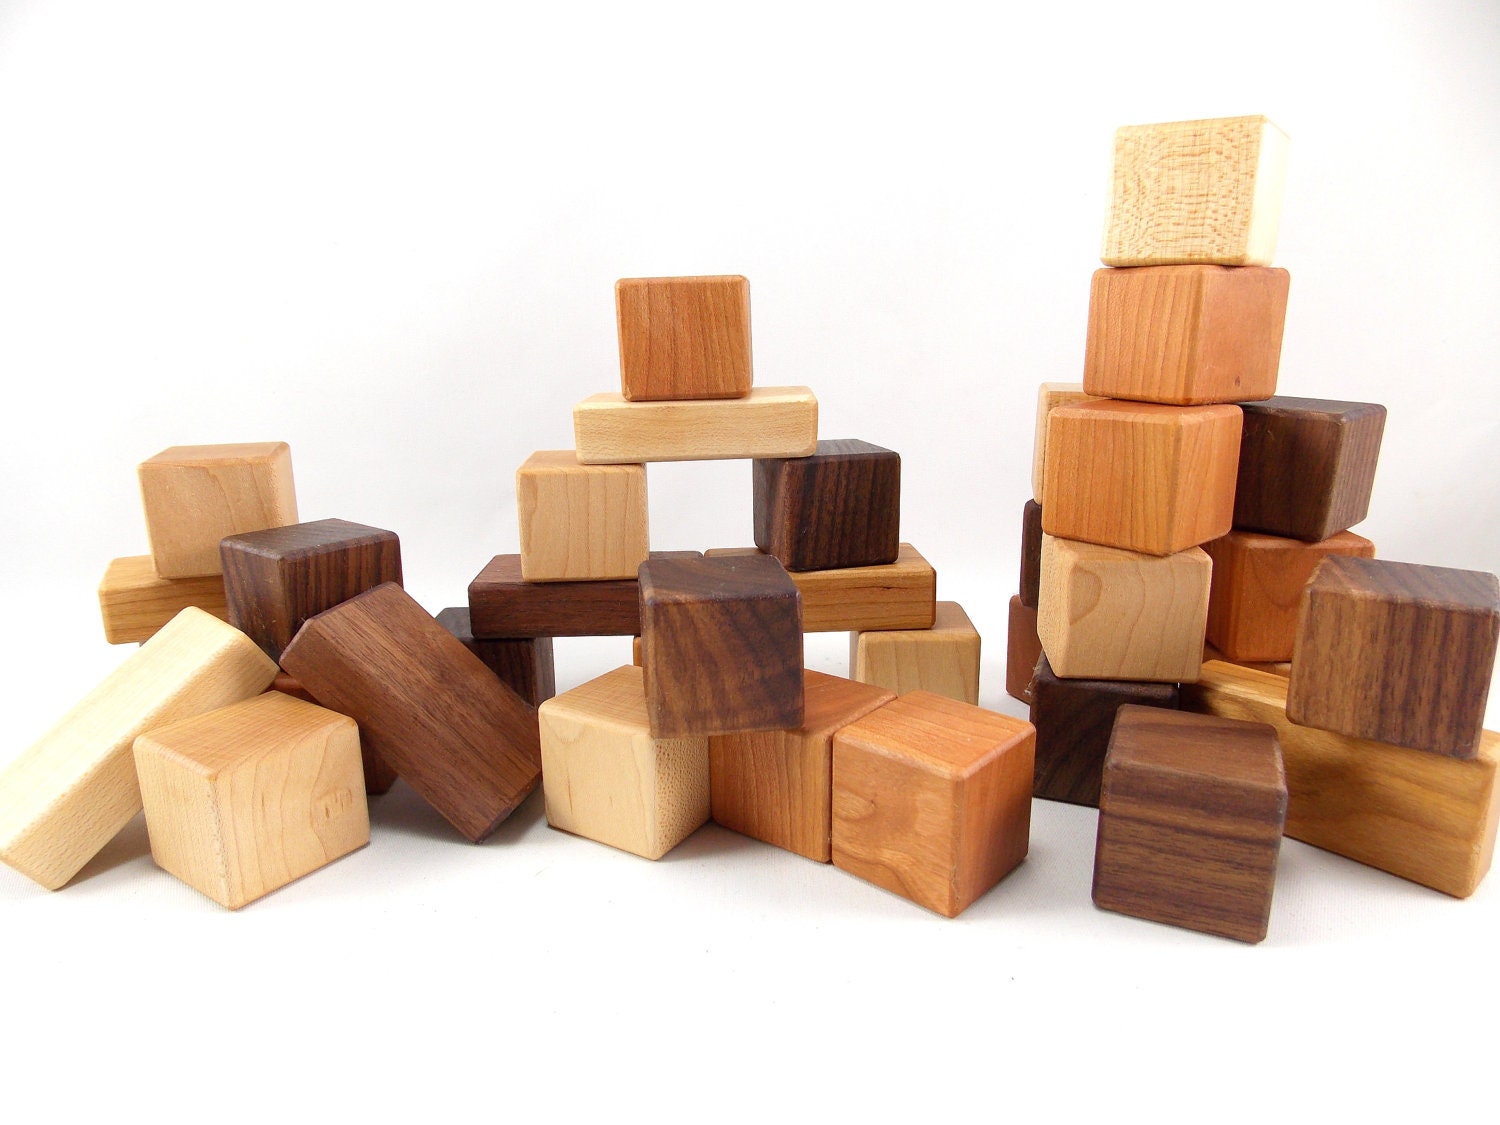 large solid wood blocks